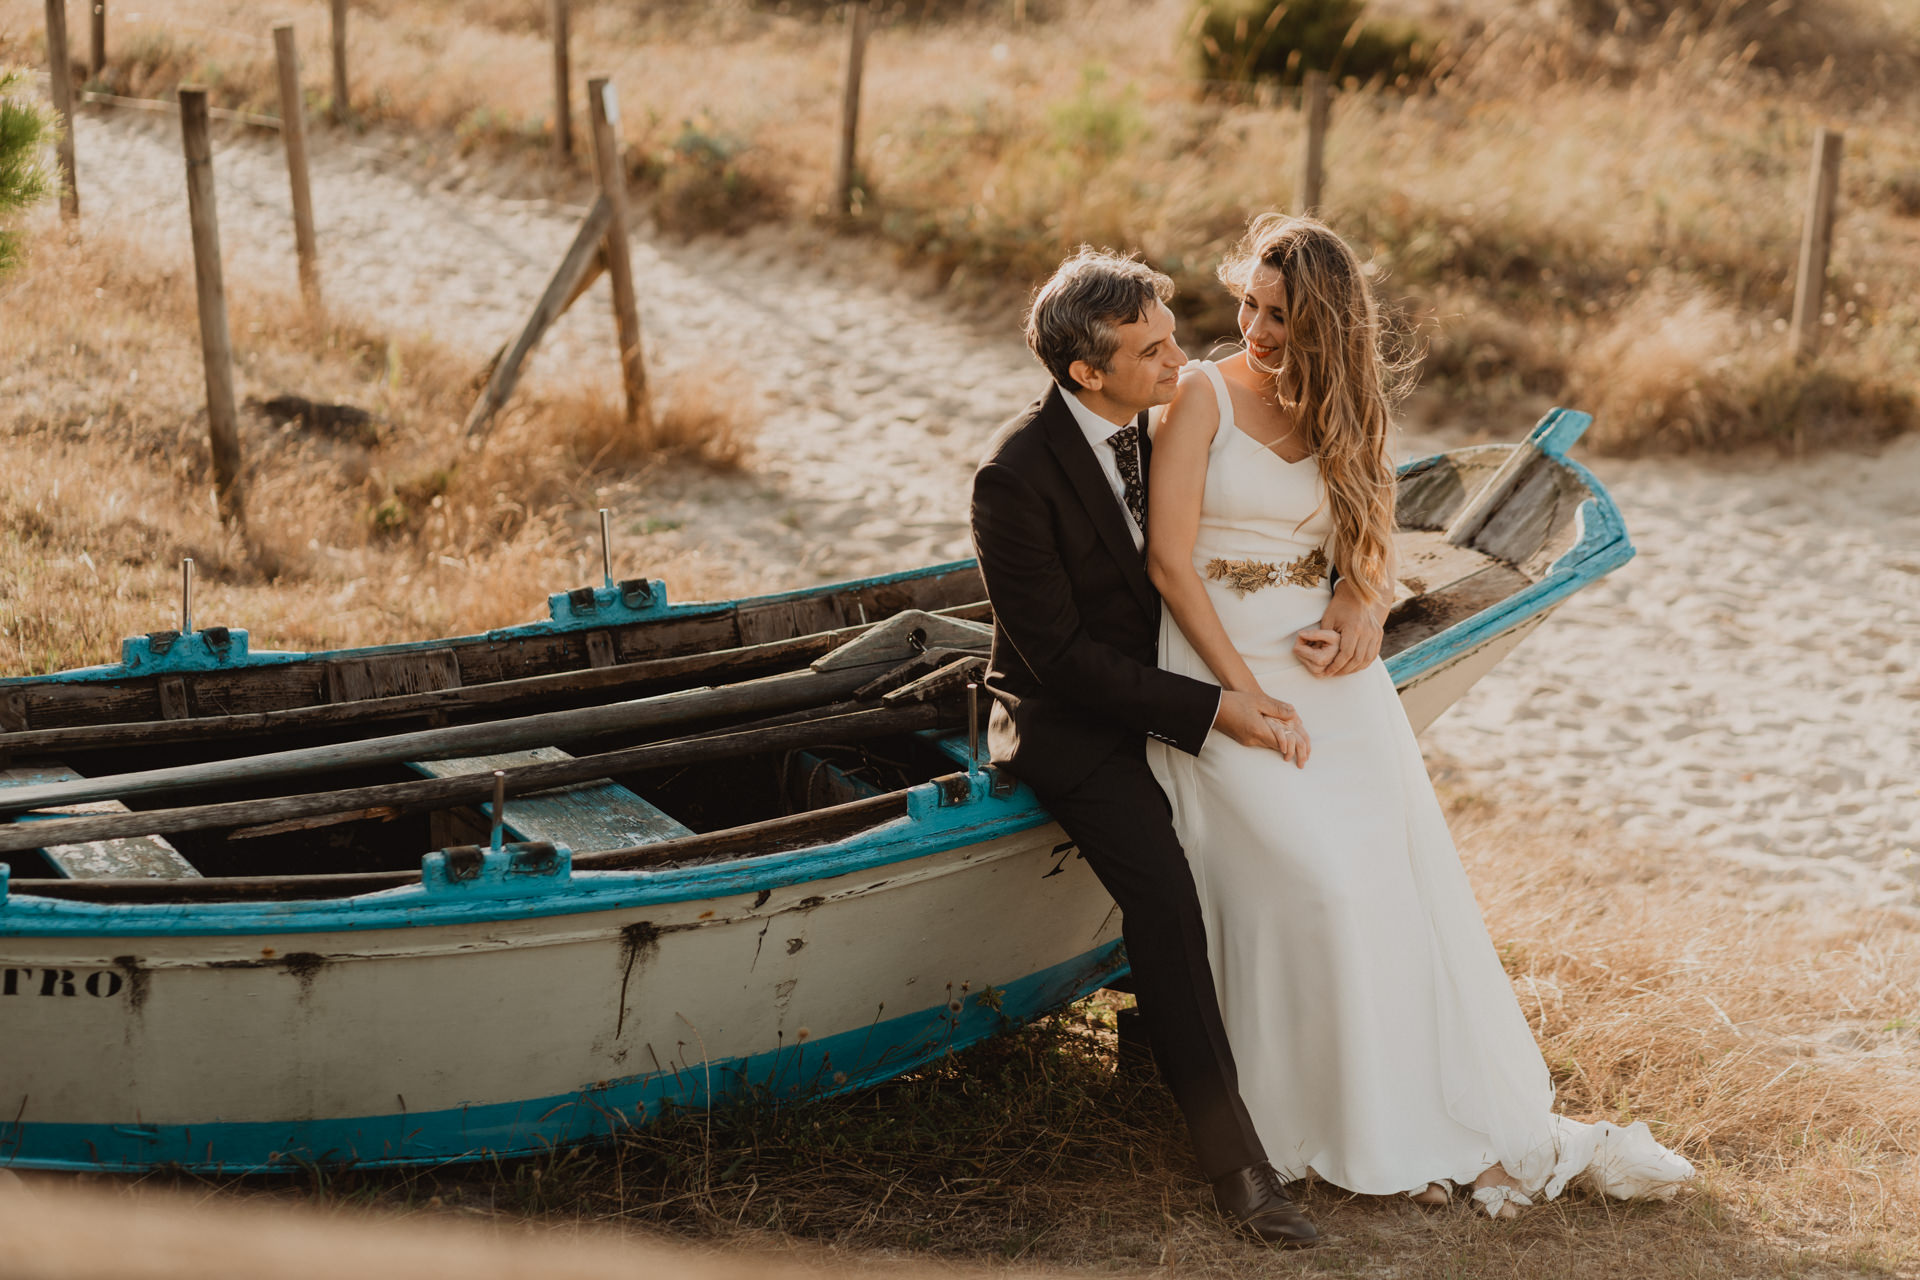 Pareja de recien casados en una playa sobre un barco de madera